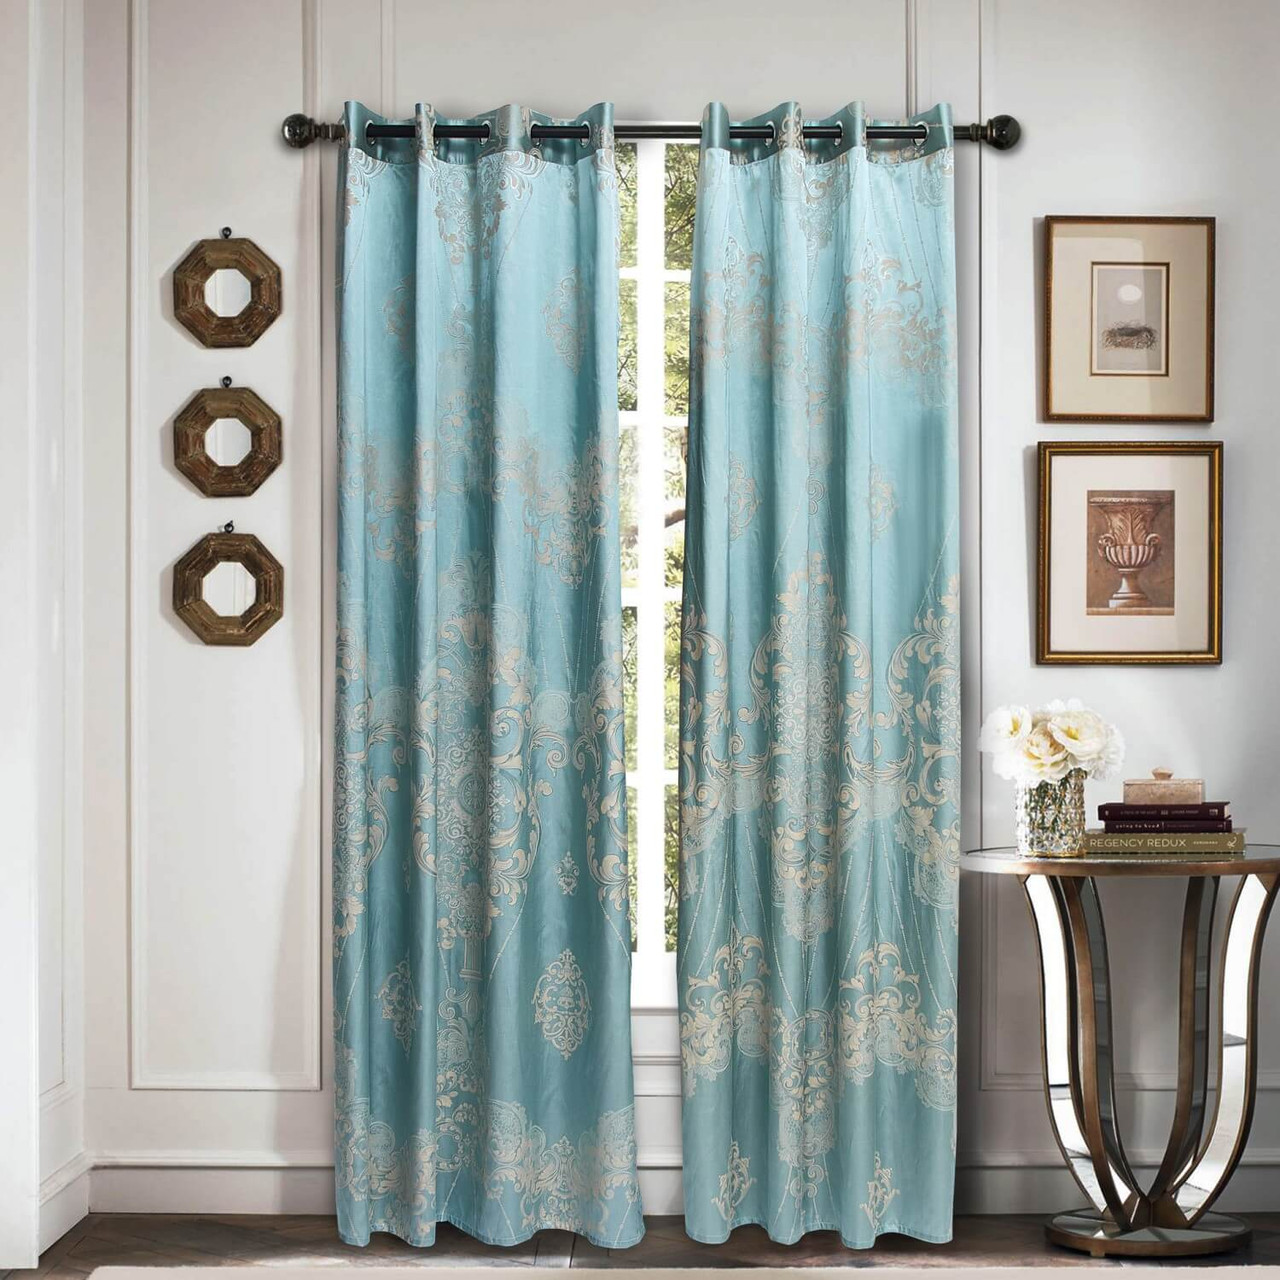 DMCU811 Dolce-Mela Luxury Jacquard Curtains Wholesale-Dropship